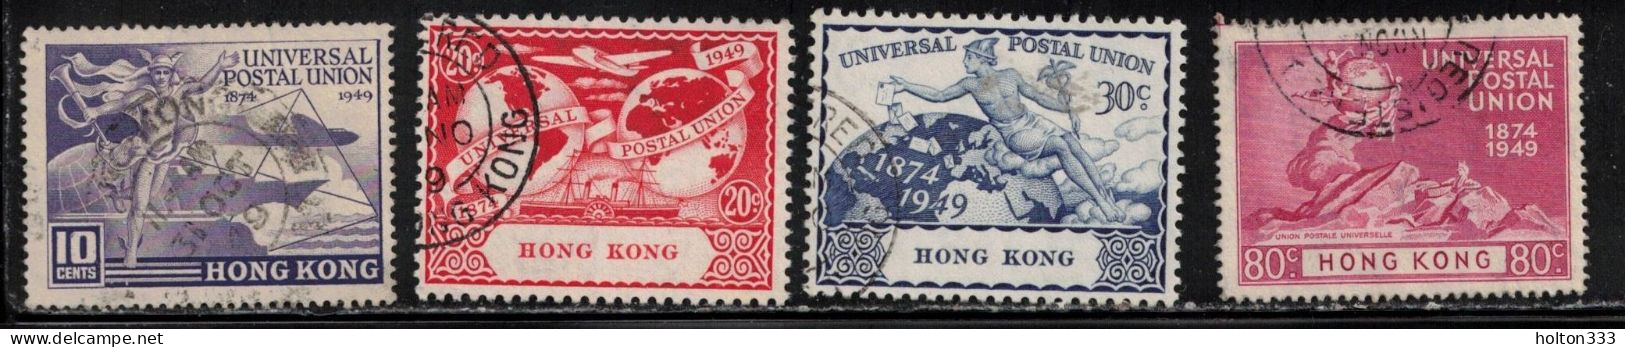 HONG KONG Scott # 180-3 Used - 1949 UPU Issue - Gebruikt